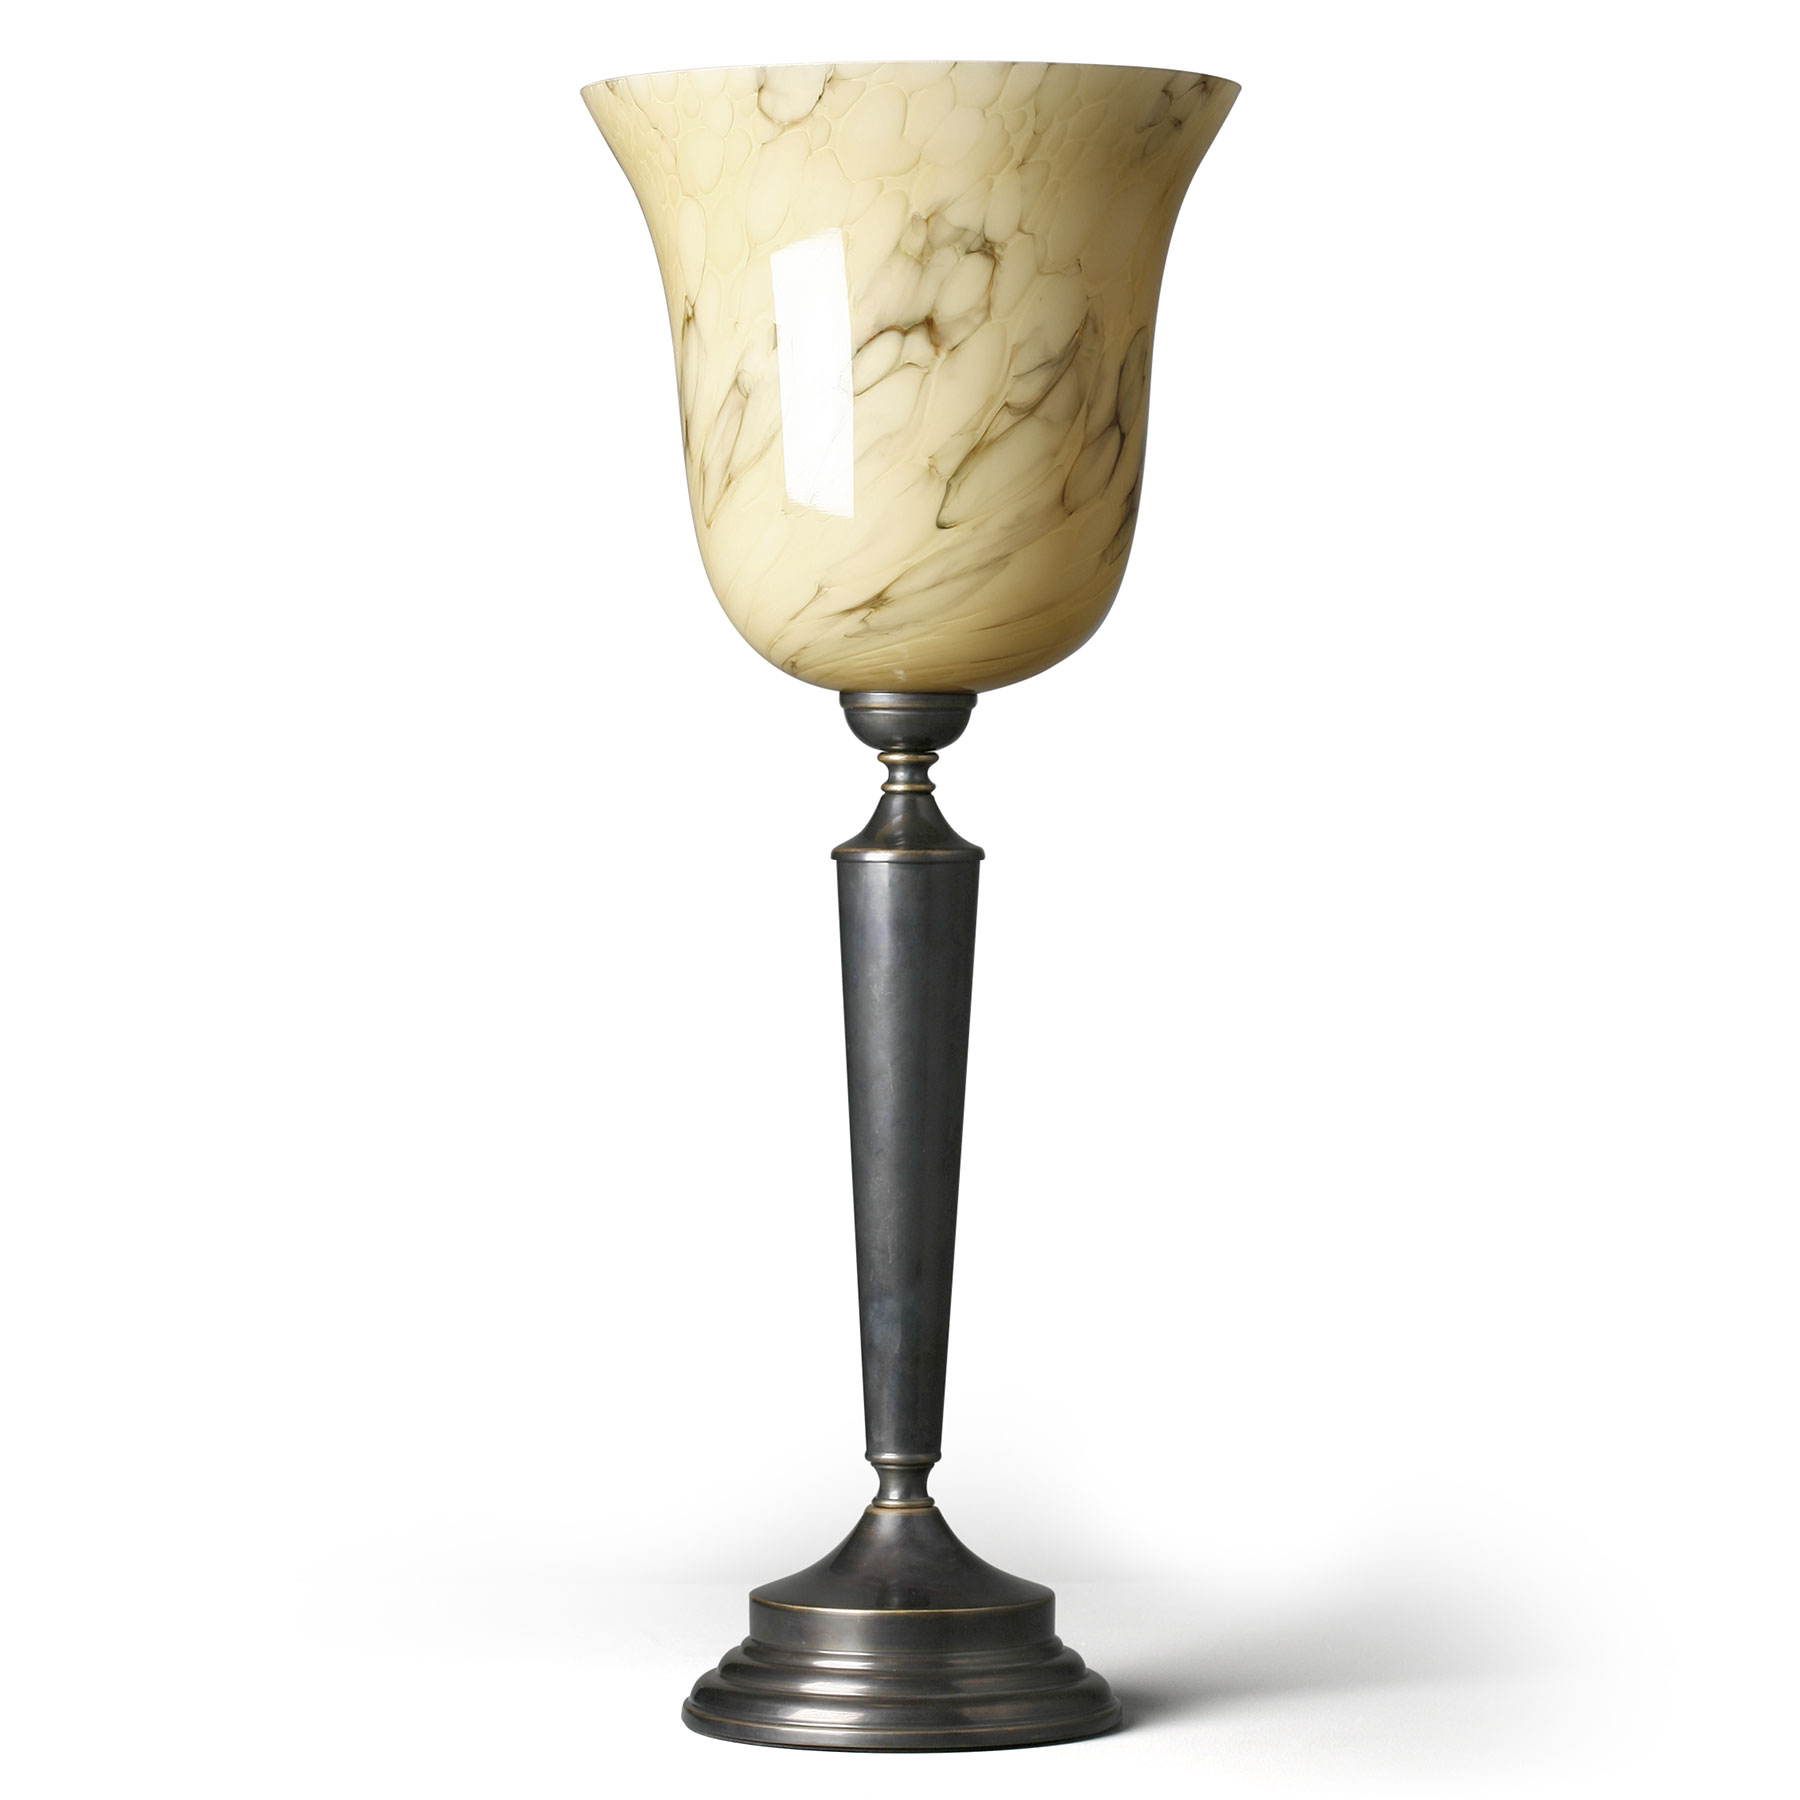 Tischleuchte im Stil der 30er-Jahre mit marmoriertem oder weißem Glas-Kelch: Elegante, klassische Tischleuchte mit schön marmoriertem Opalglas-Schirm und Messing-Fuß (hier brüniert)